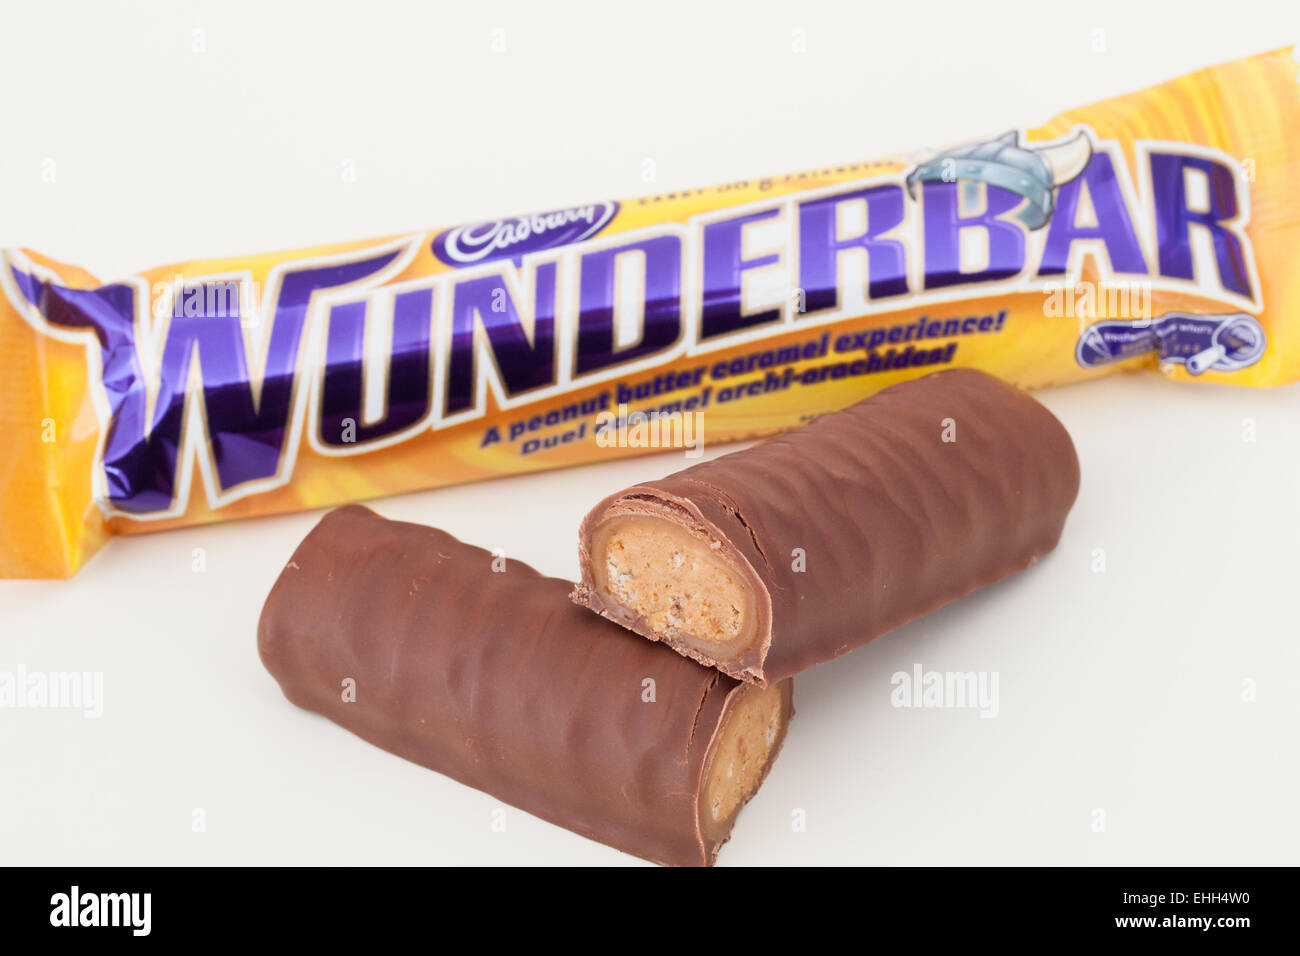 a-cadbury-wunderbar-chocolate-bar-which-